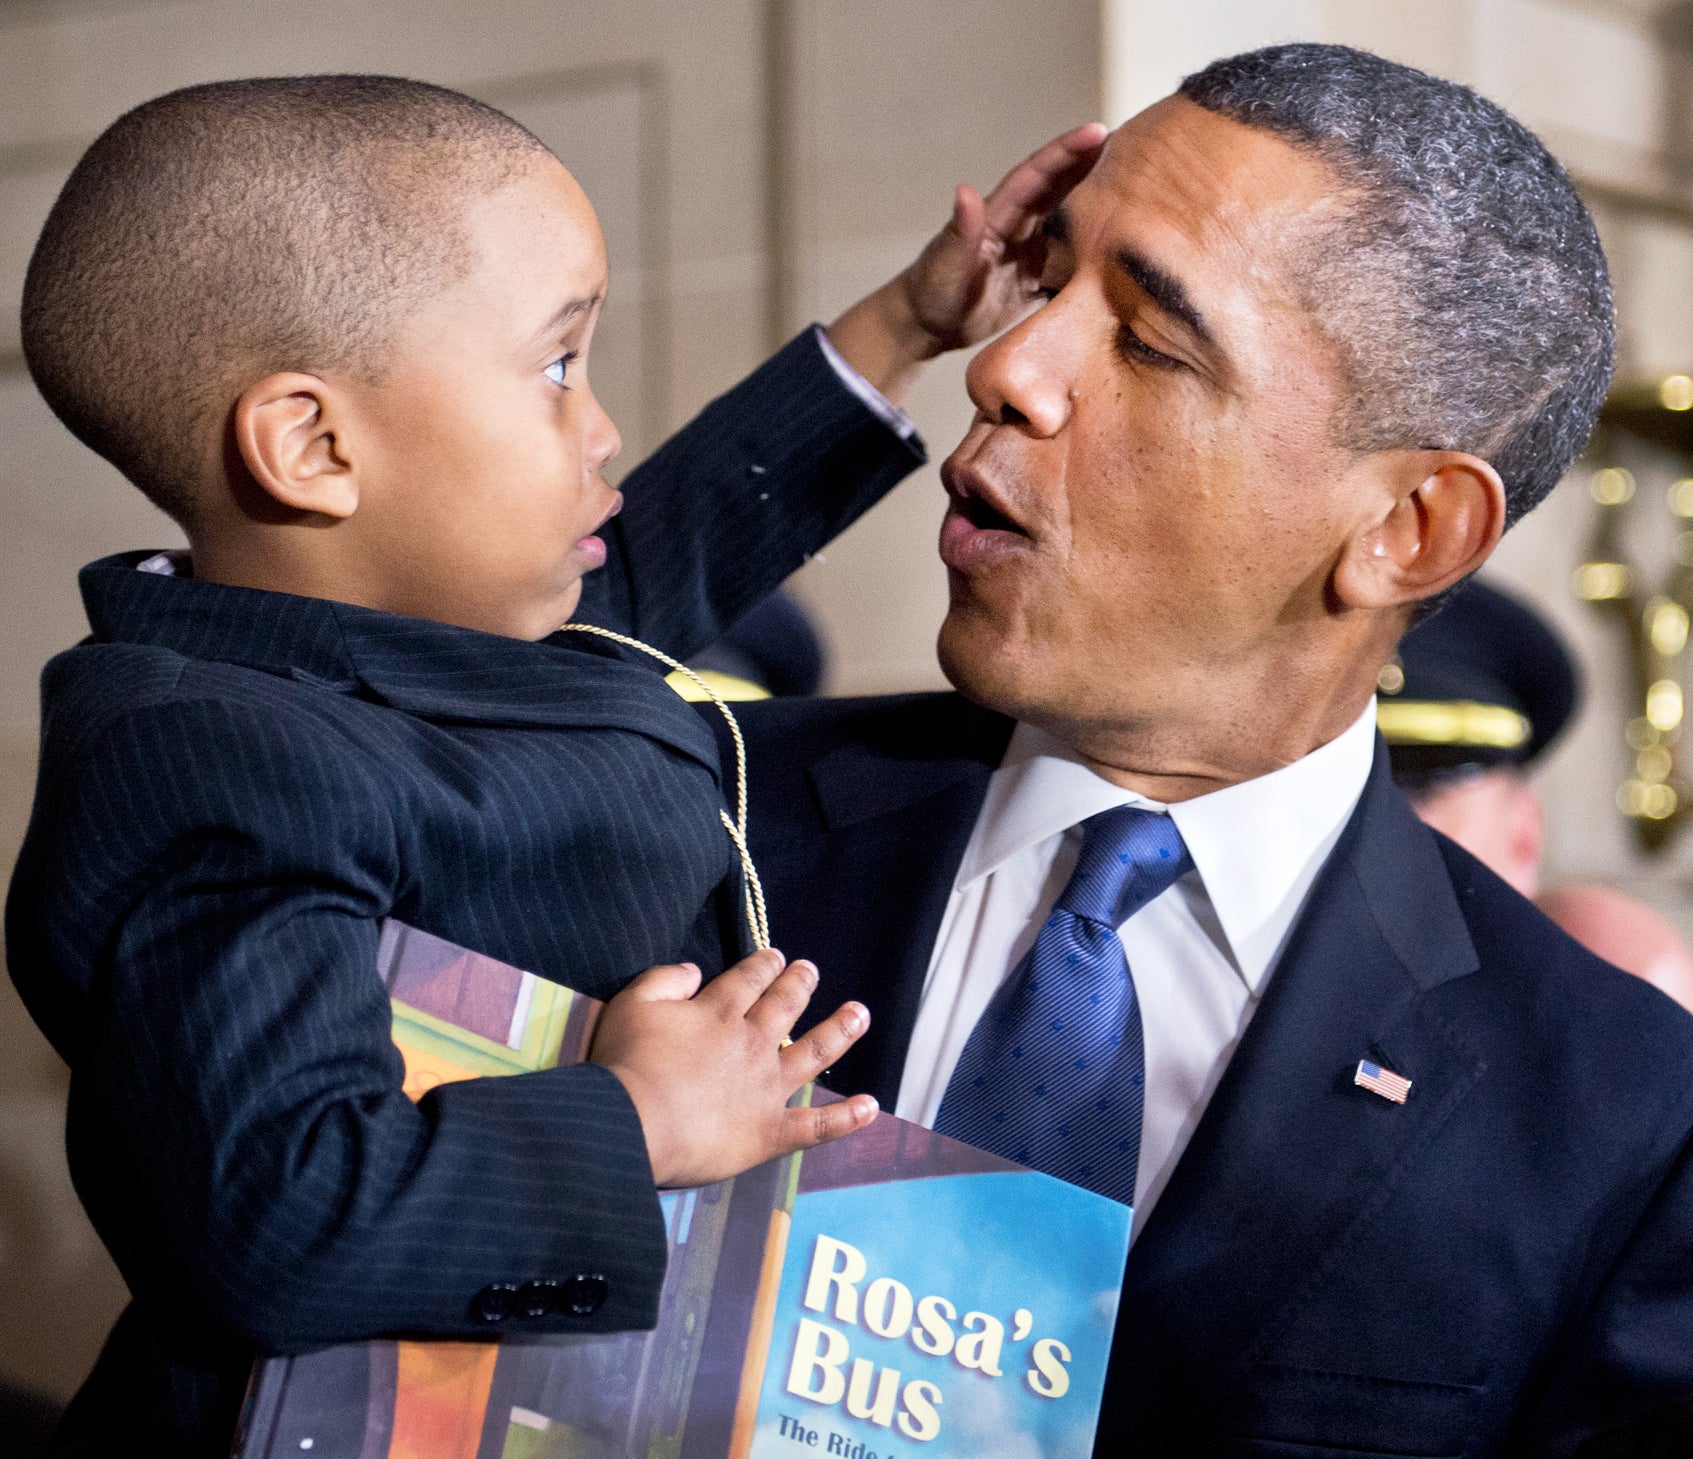 Obama Watch: Latest Photos 2.28.13